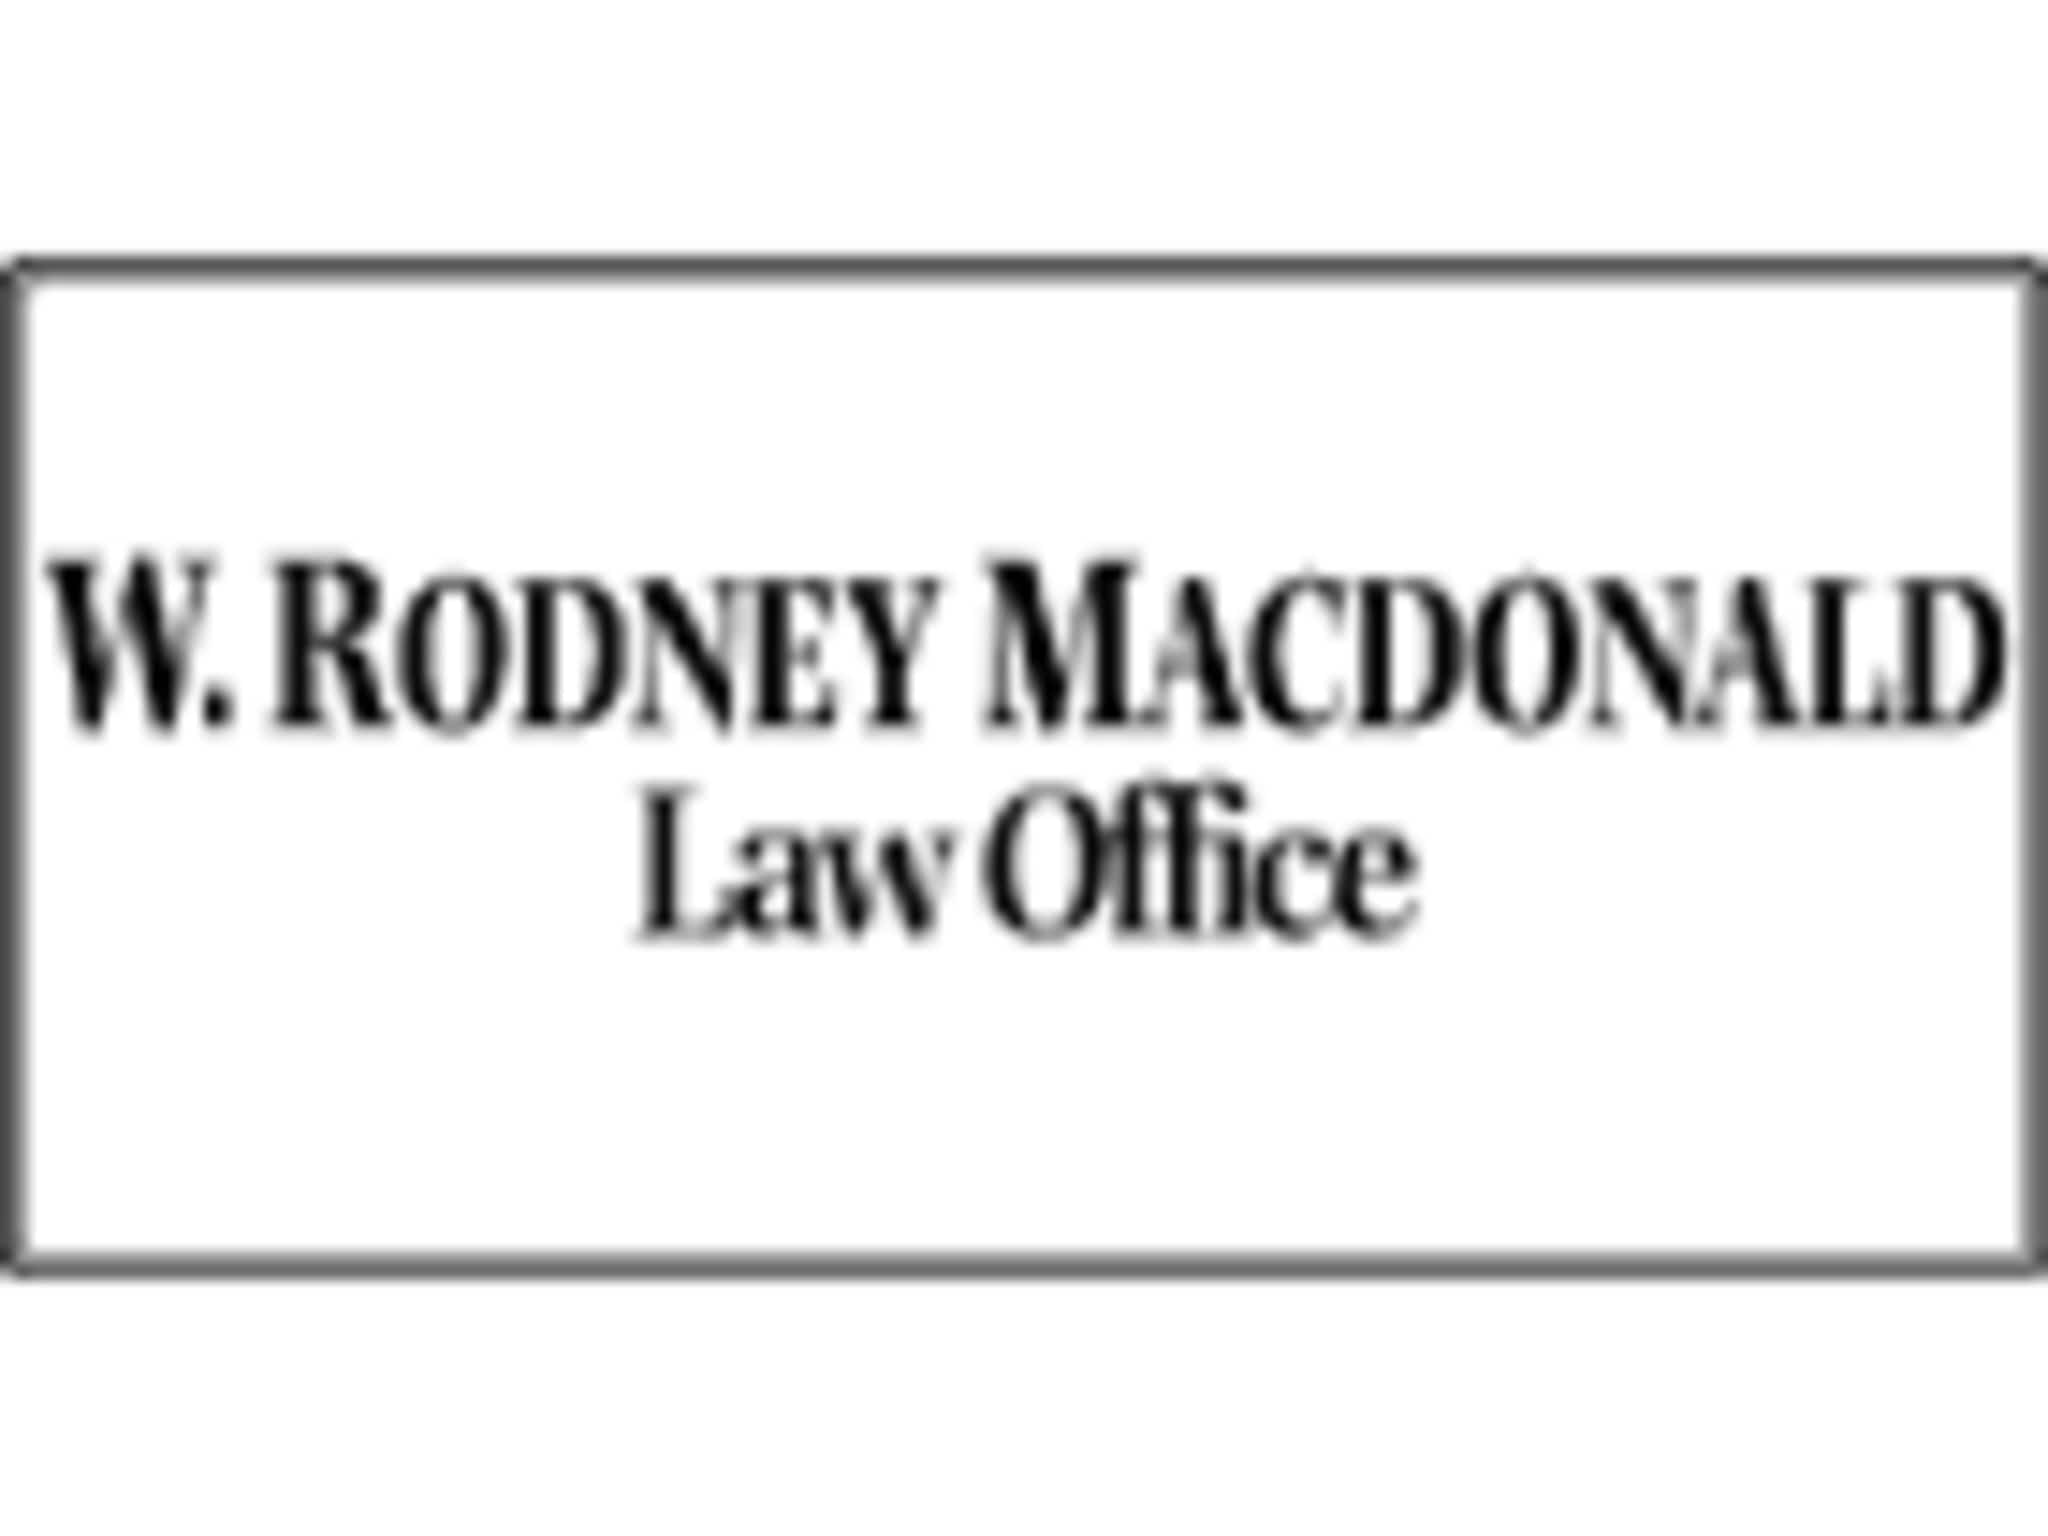 photo Macdonald W Rodney Law Office